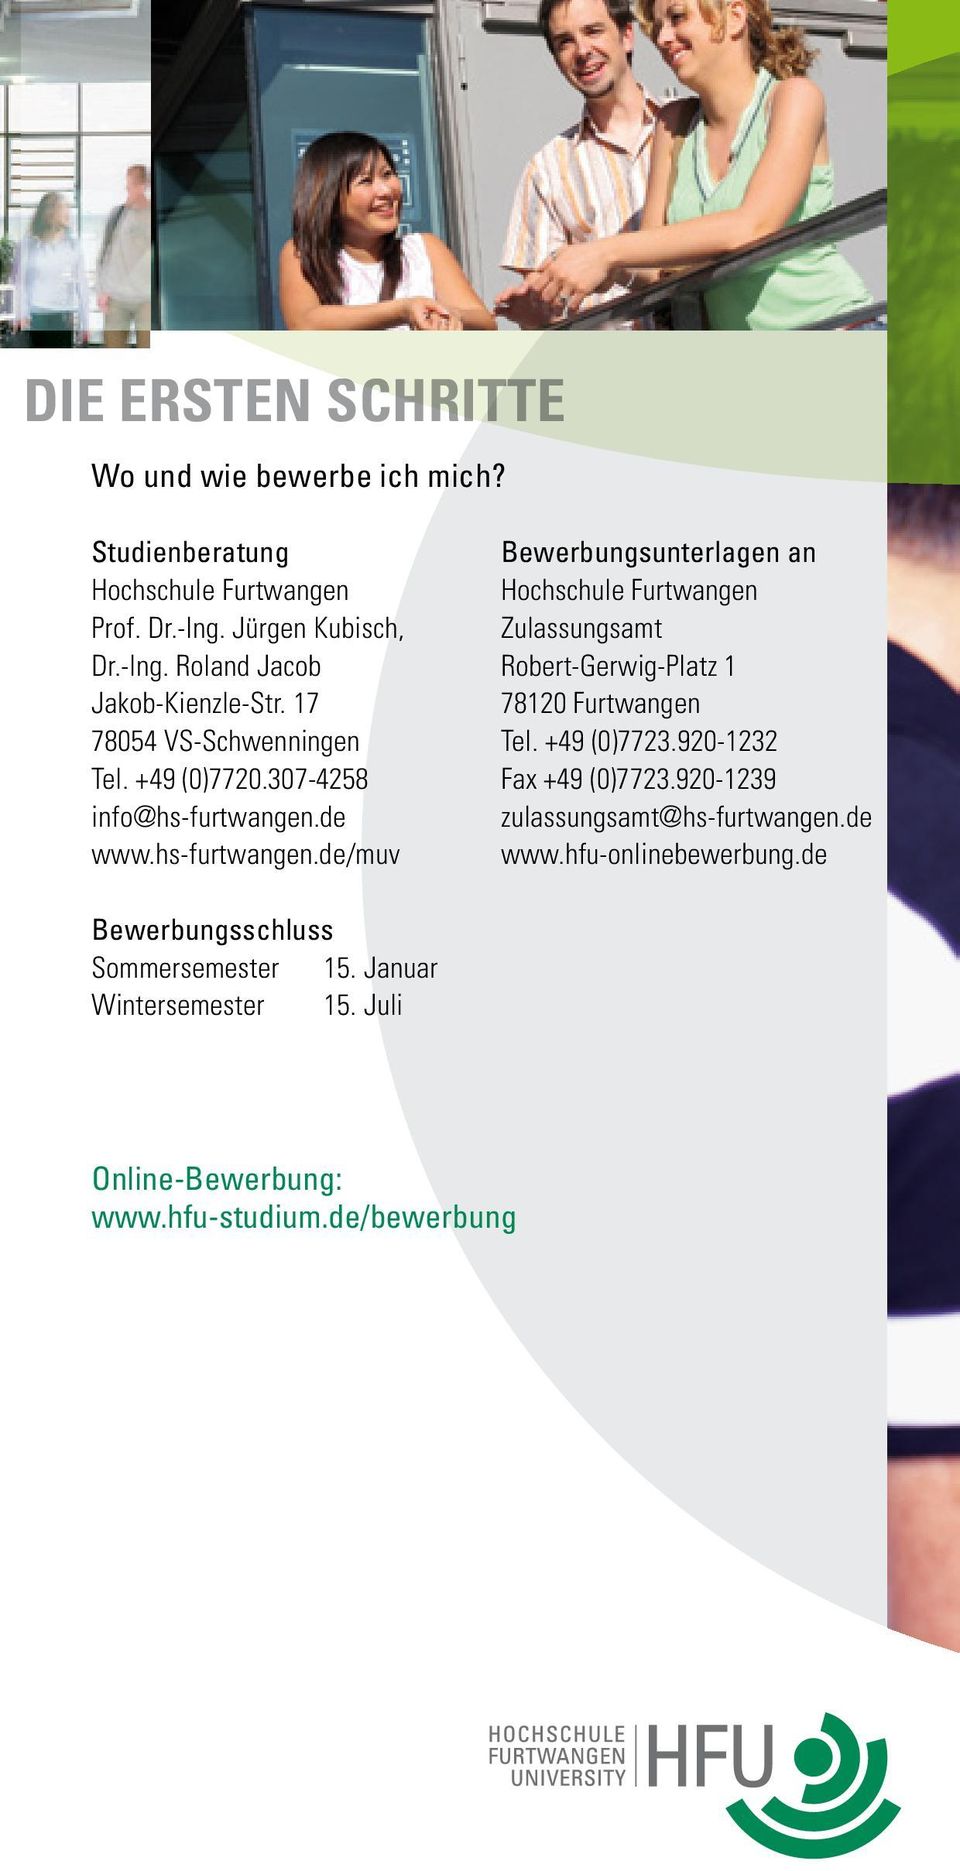 de www.hs-furtwangen.de/muv Bewerbungsunterlagen an Hochschule Furtwangen Zulassungsamt Robert-Gerwig-Platz 1 78120 Furtwangen Tel. +49 (0)7723.